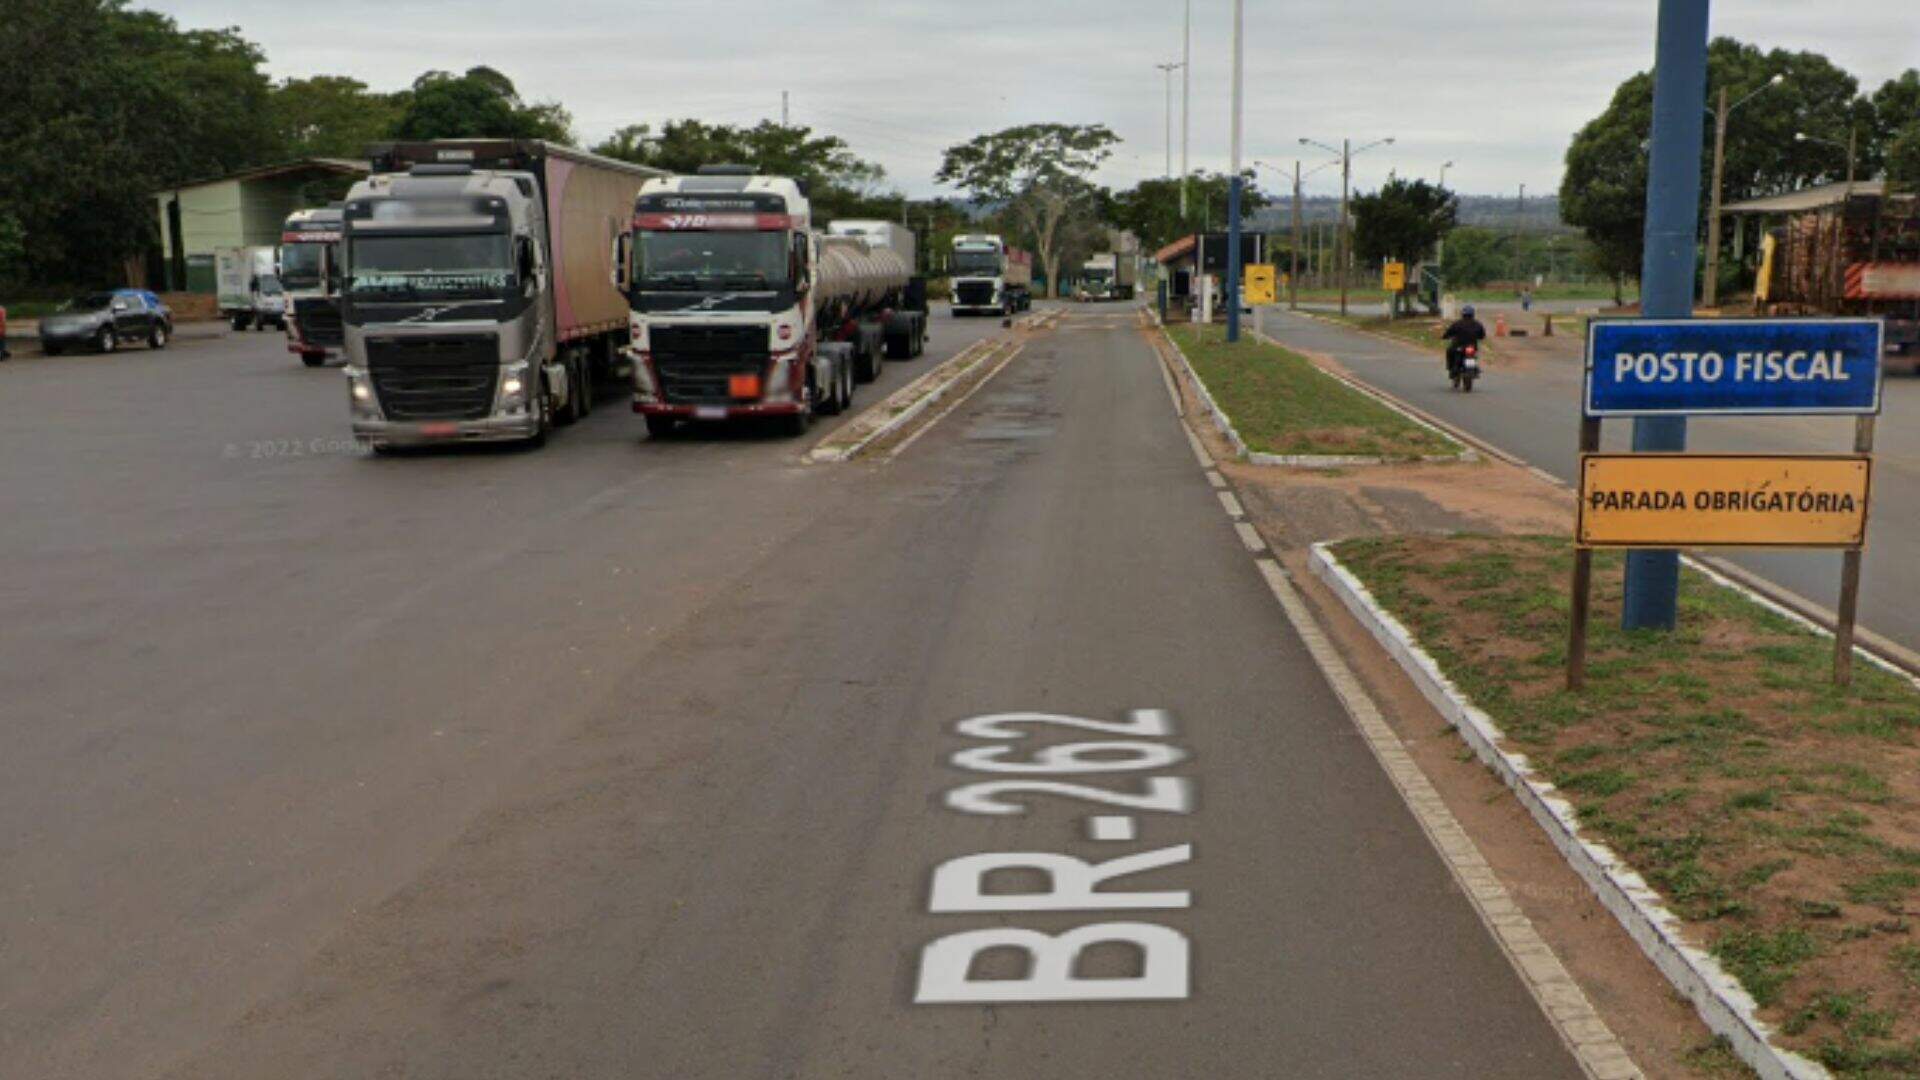 Polícia persegue Fiorino até São Paulo após condutor se negar a parar veículo em posto fiscal